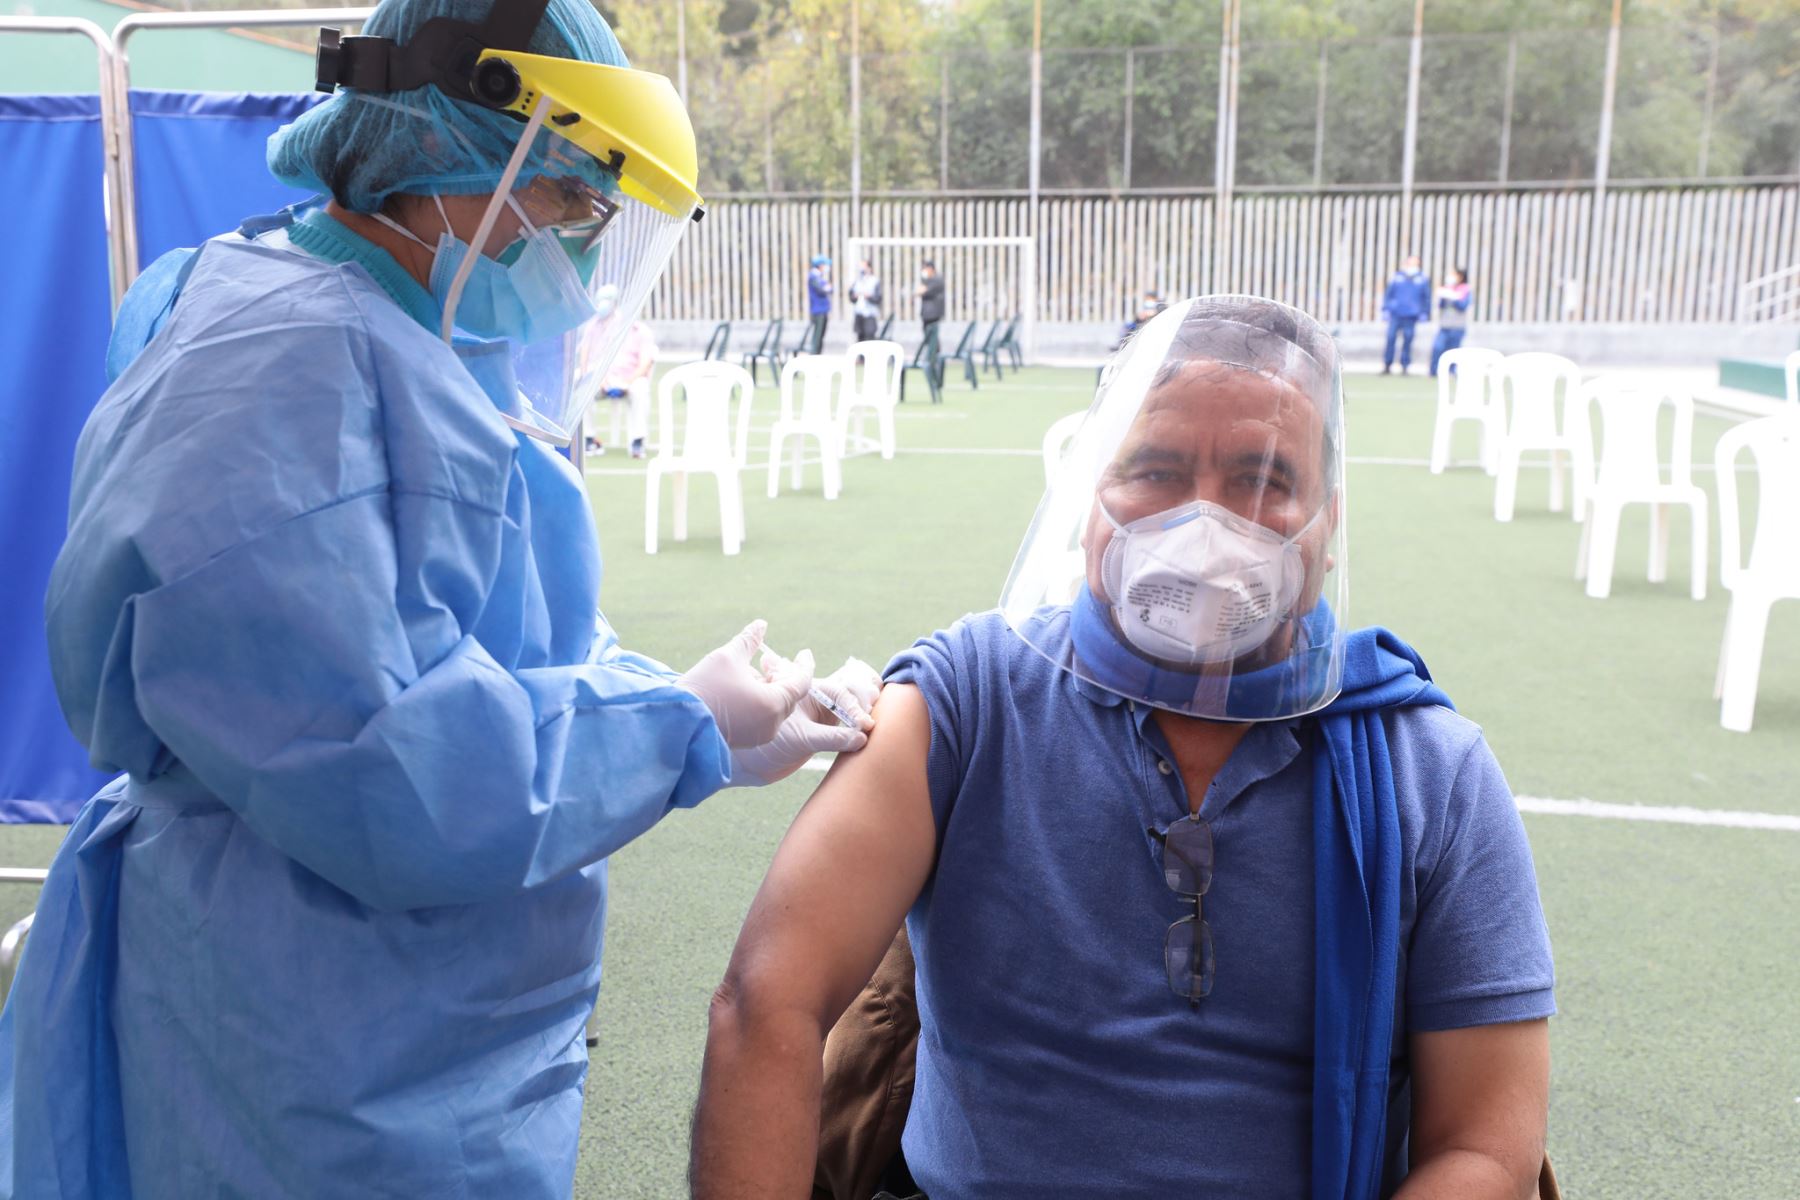 Campaña de vacunación para adultos mayores de Essalud en Lince.

Foto: ANDINA / ESSALUD